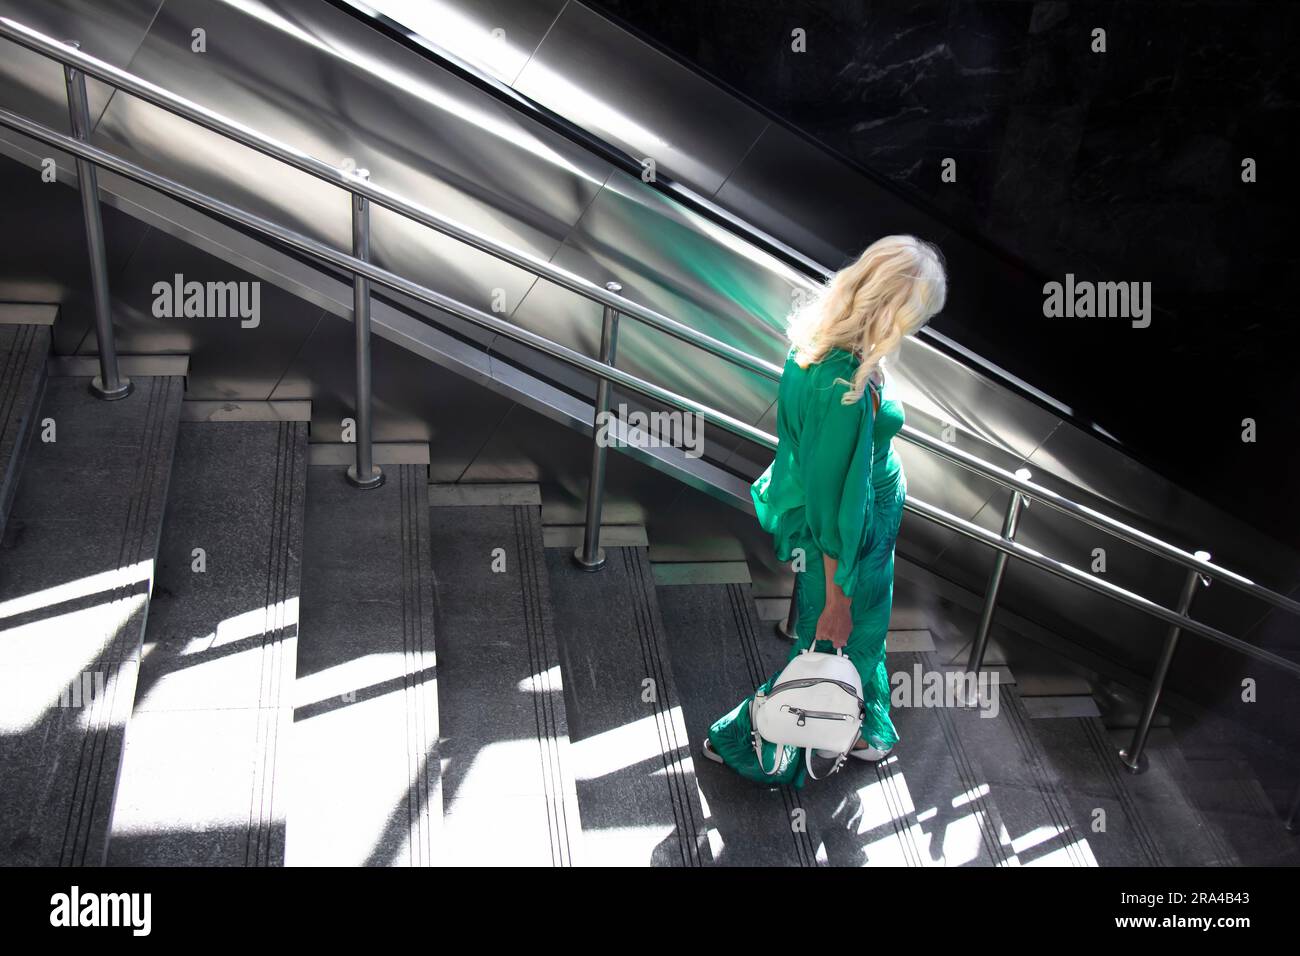 Belgrad, Serbien - 15. Juni 2022: Eine blonde Frau in grünem Outfit, die an einem sonnigen Tag die U-Bahn-Treppe hinuntergeht Stockfoto